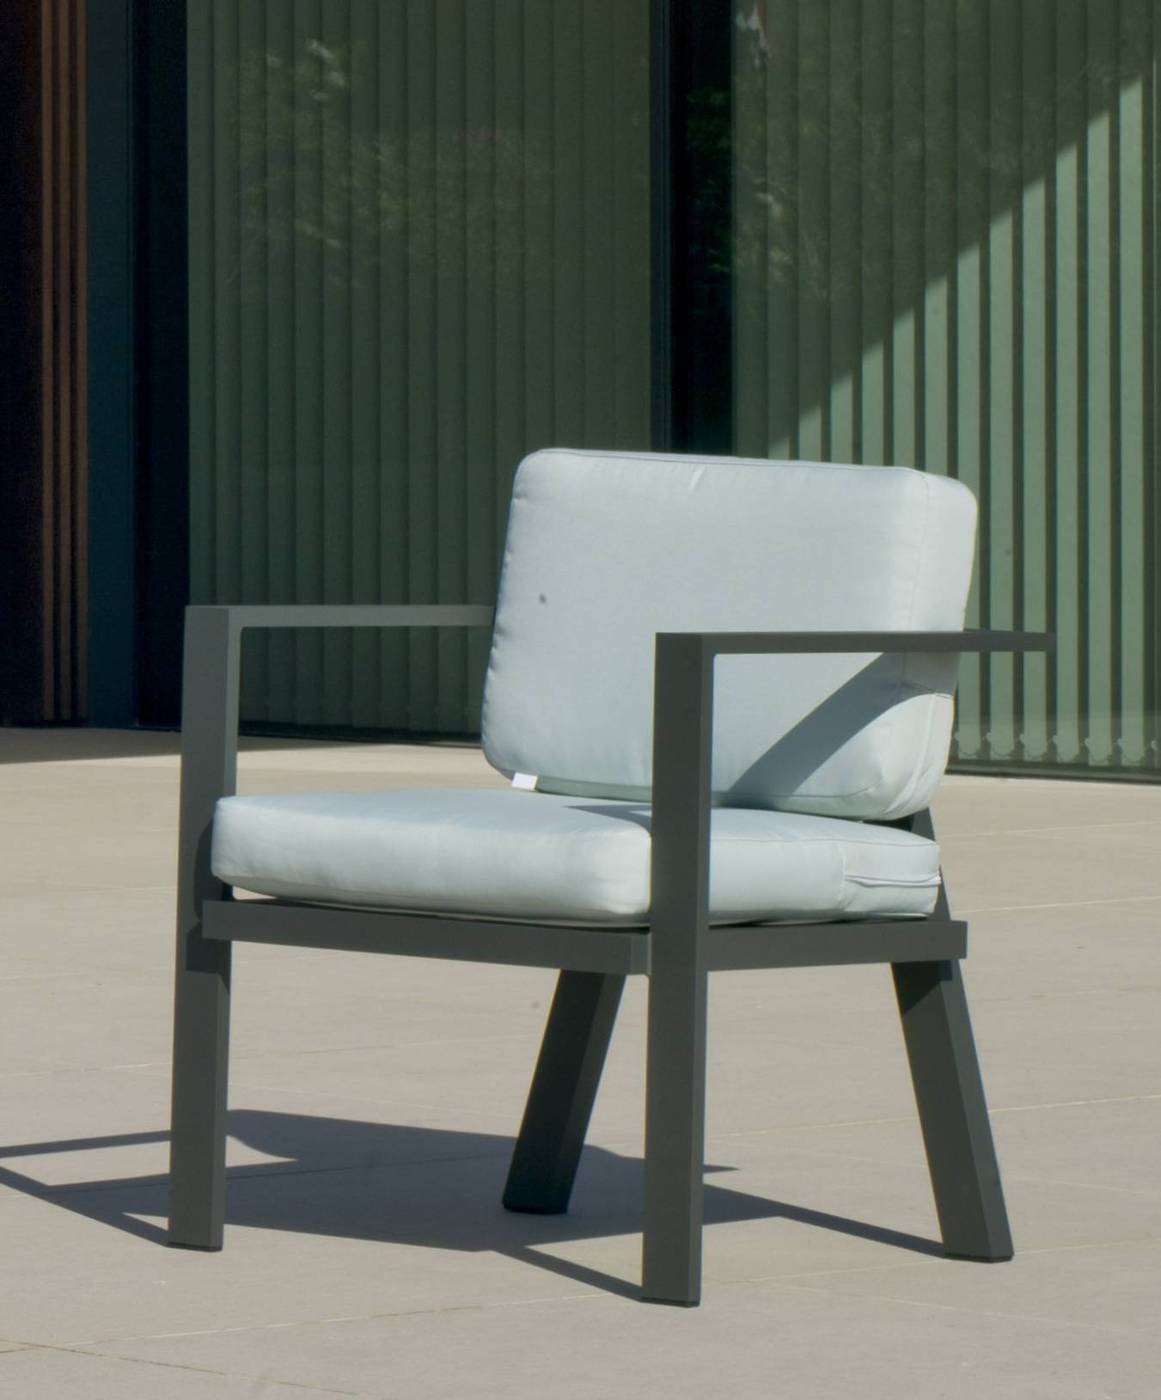 Conjunto Aluminio Luxe Azores-8 - Conjunto de aluminio luxe: 1 sofá de 3 plazas + 2 sillones + 1 mesa de centro + cojines. Disponible en color blanco y antracita.